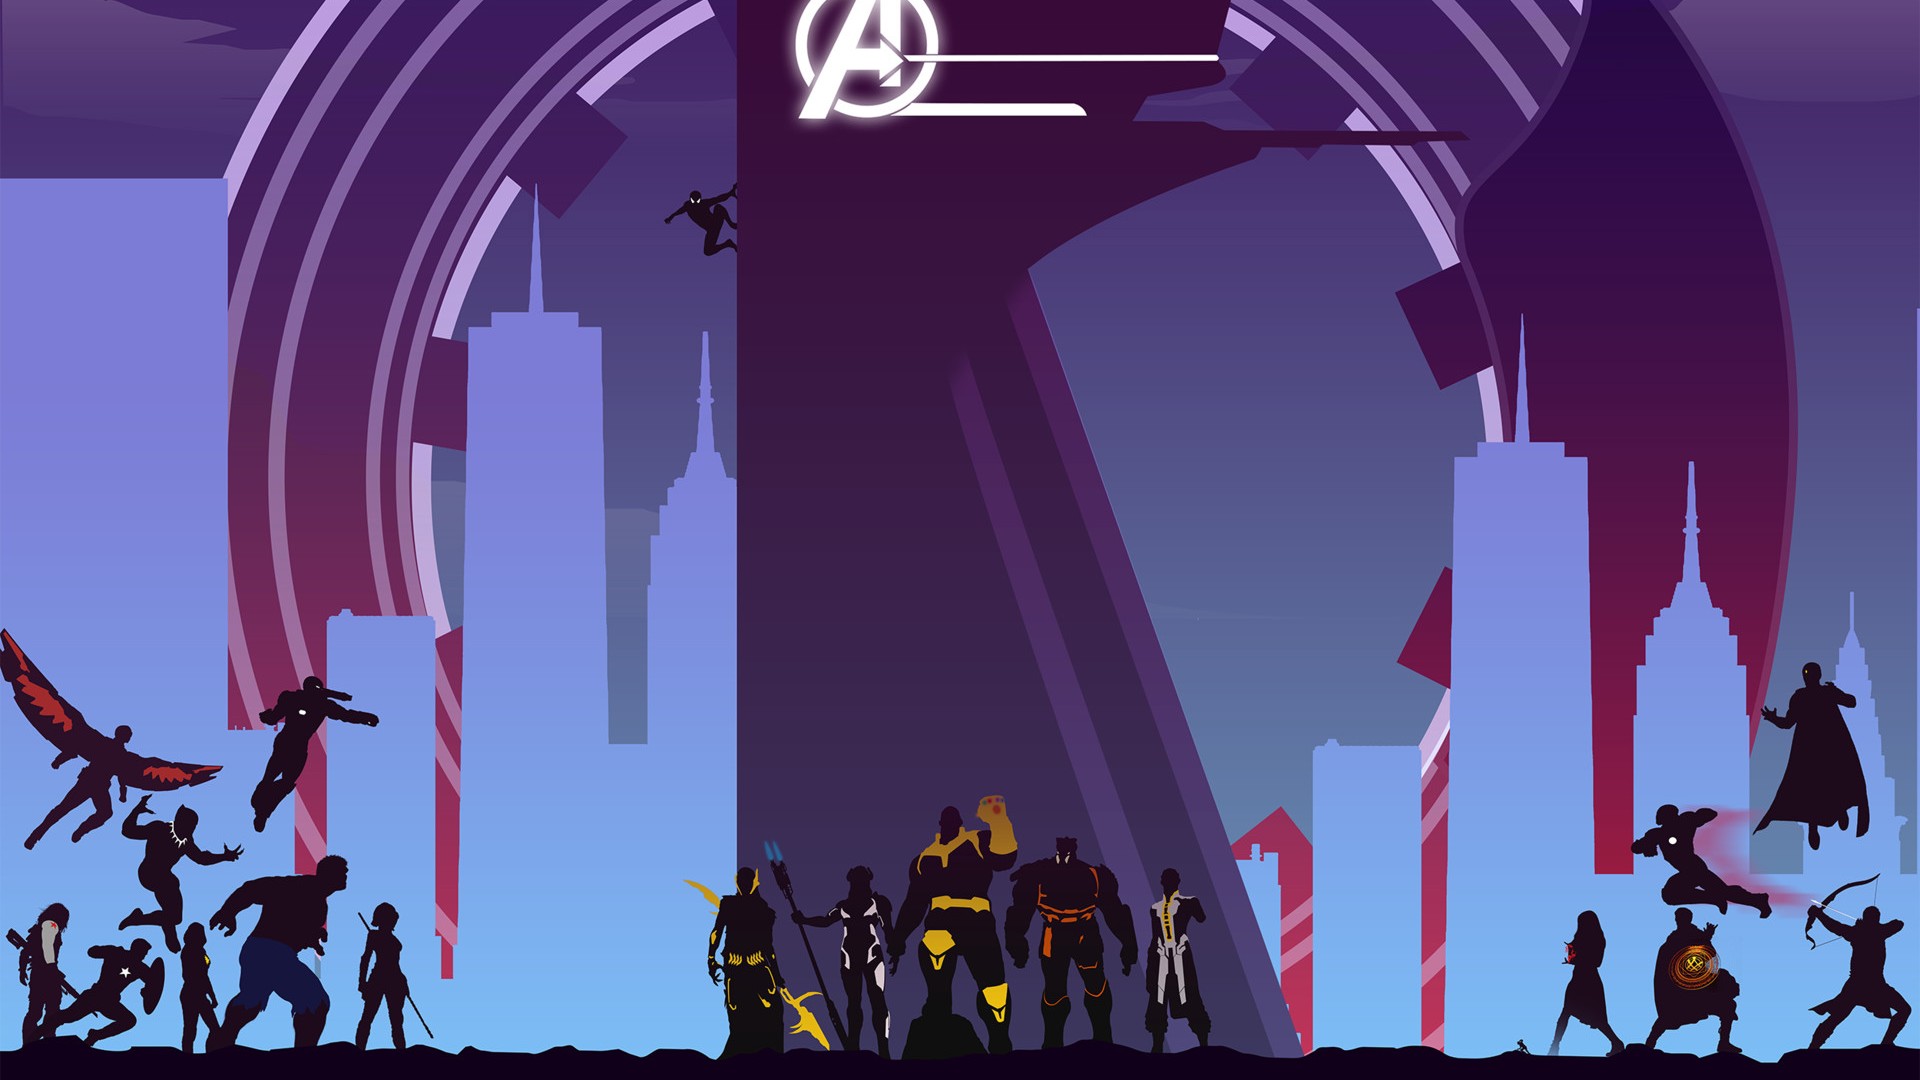 Avengers Infinity War Artwork Full Hd Wallpaper for Desktop and Mobiles iPhone  7 Plus / iPhone 8 Plus - HD Wallpaper 